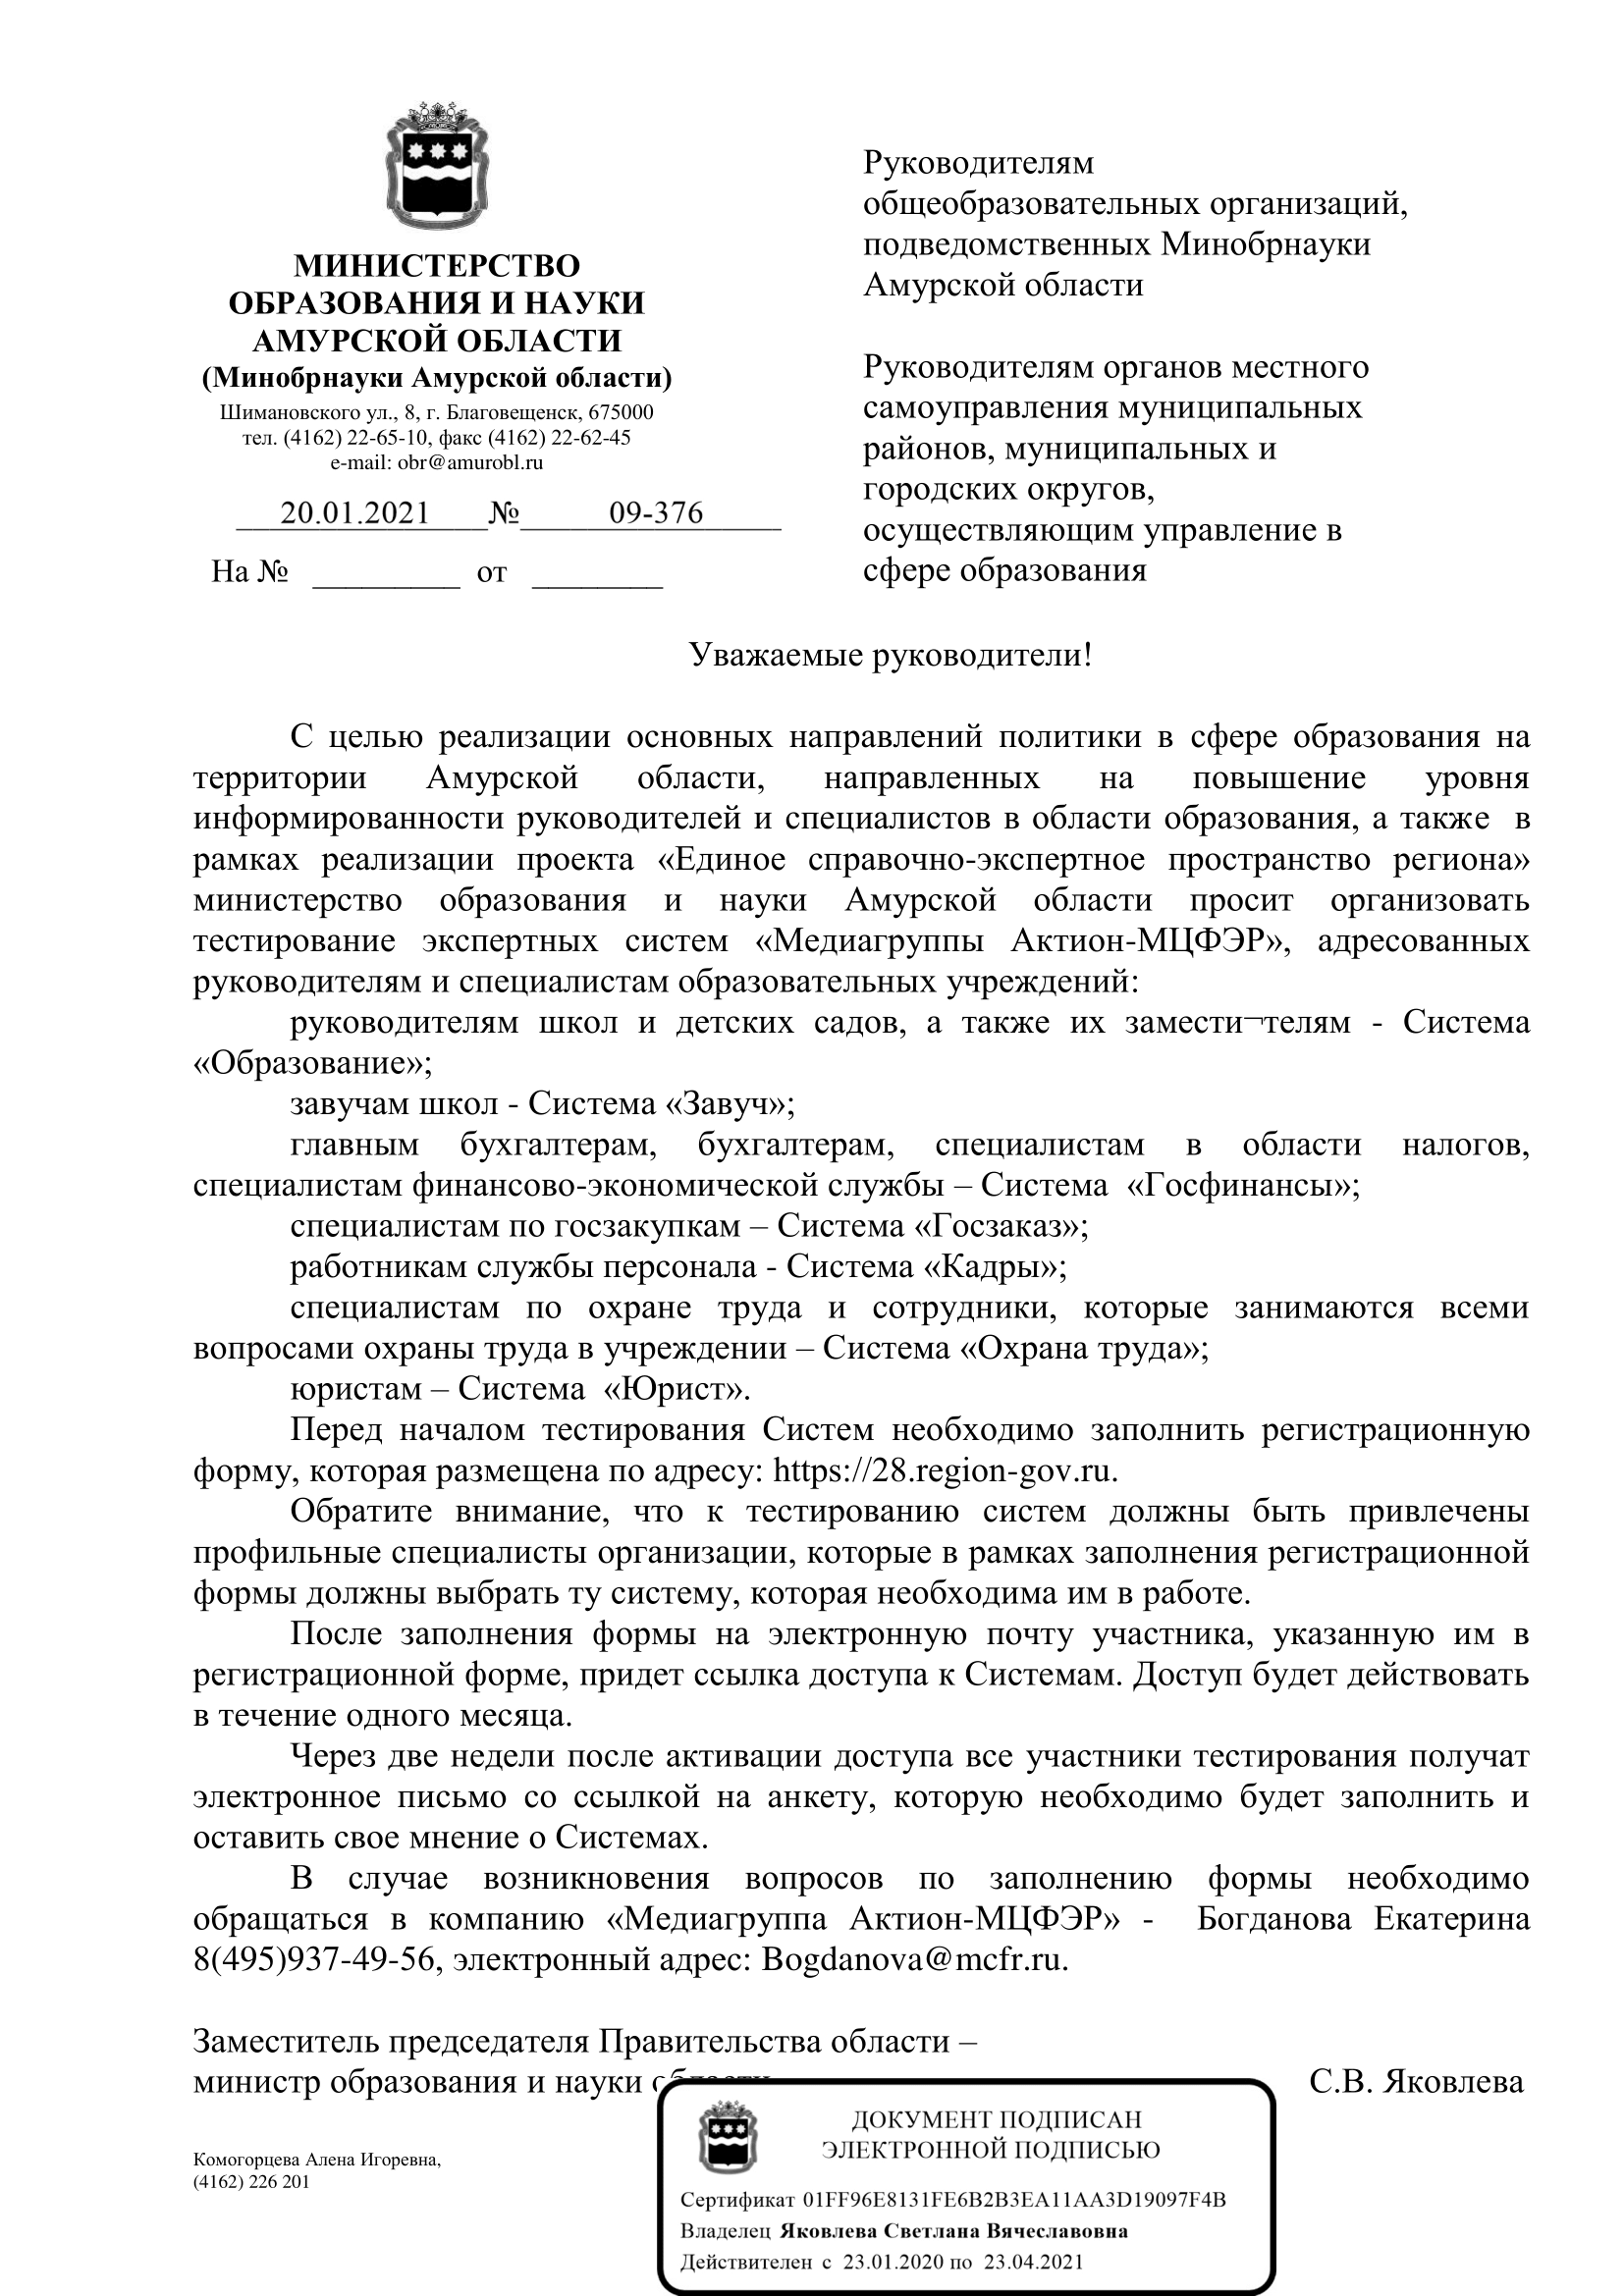 Письмо Министерства образования и науки Амурской области №09-376 от 20.01.2021 г.